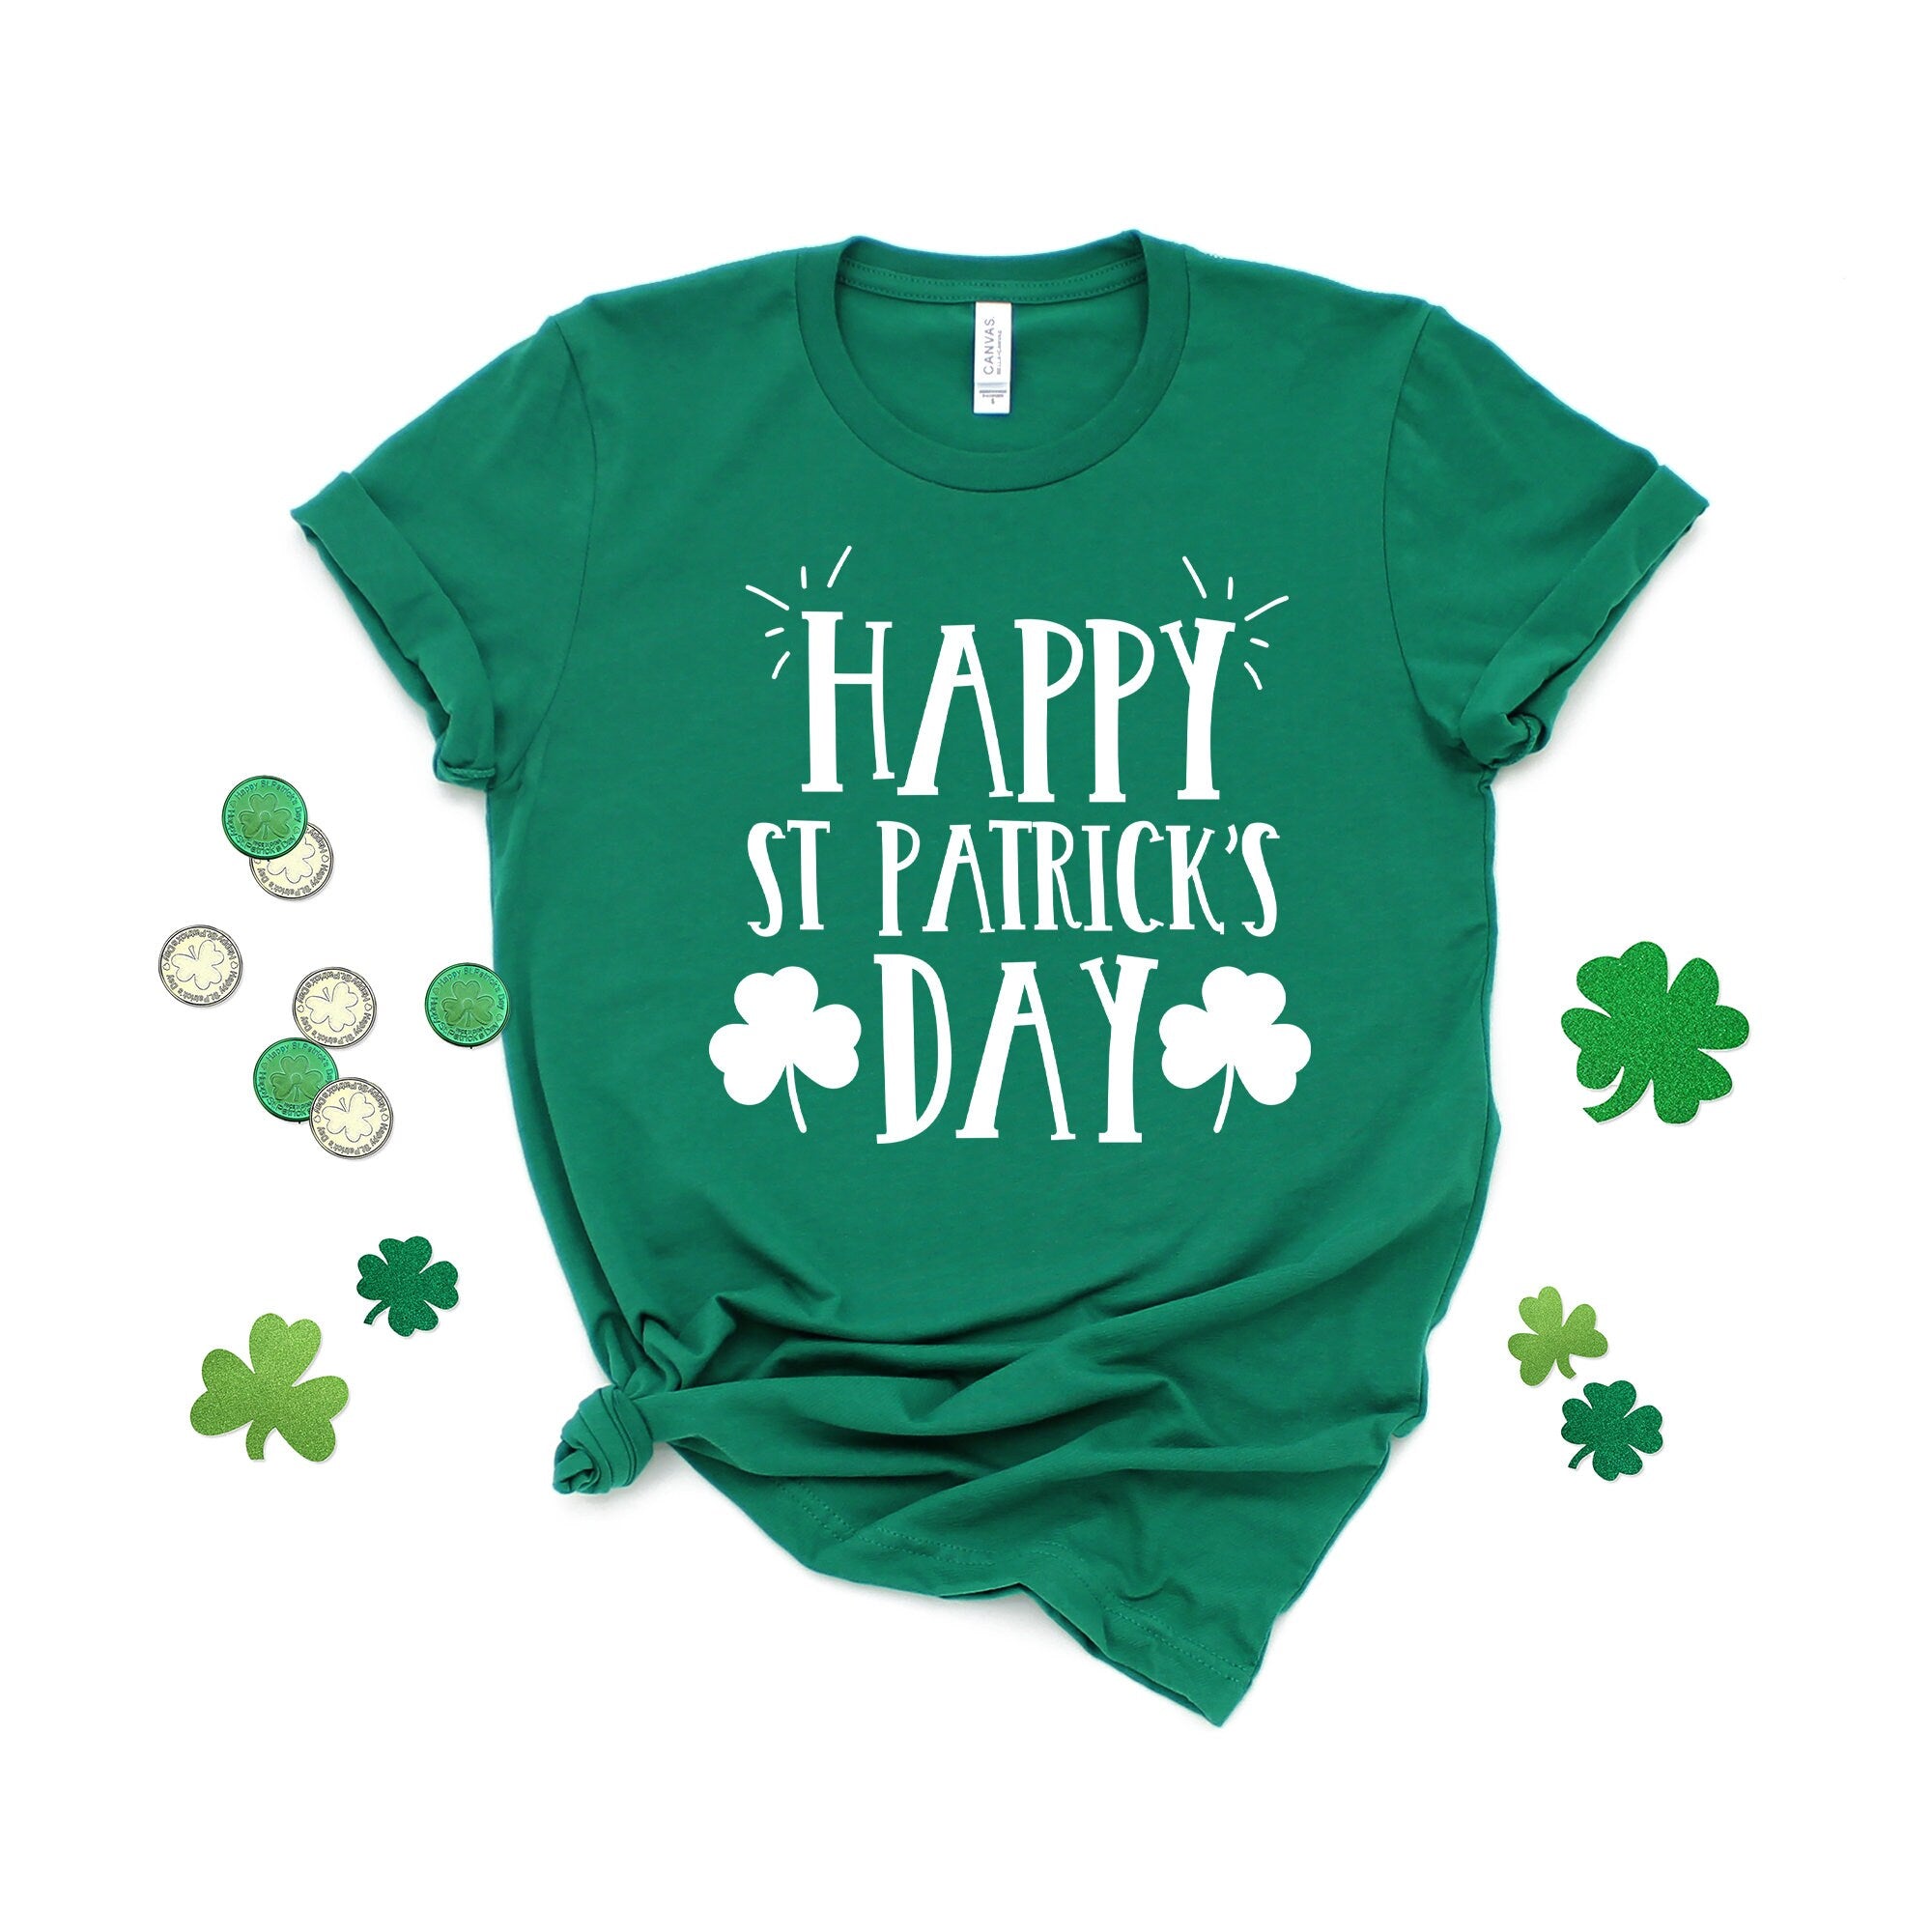 Happy St. Patrick's Day Shirt, Irish Shirt, St. Patrick's Day T-Shirt, Luck of the Irish, Shamrock Shirt